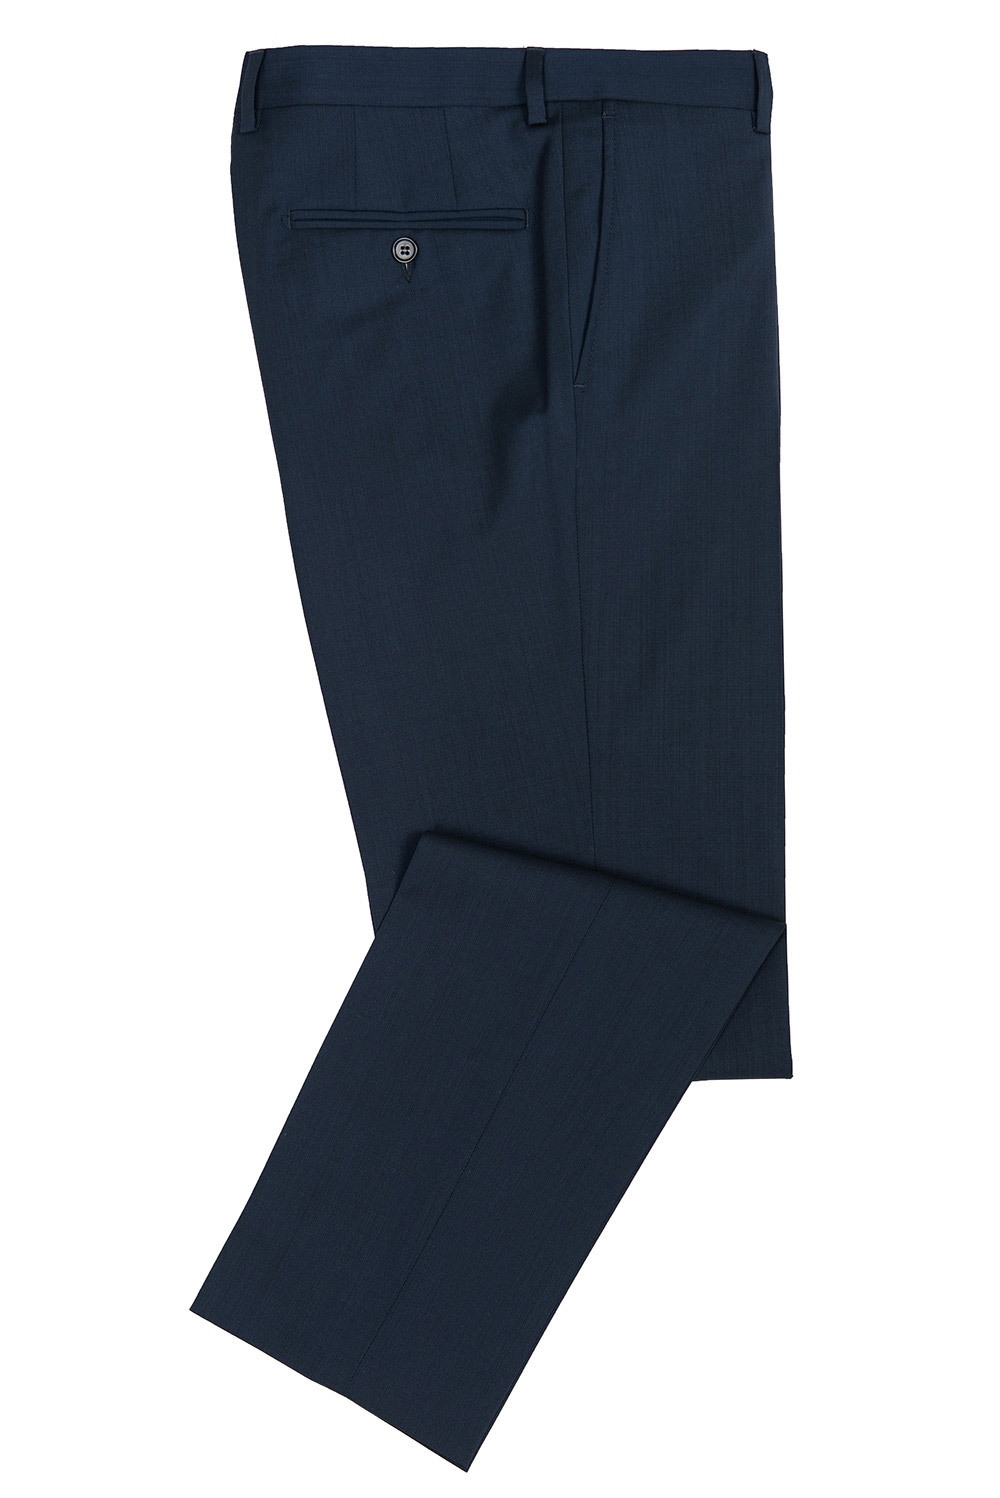 Pantaloni riccof superslim albastri uni 0